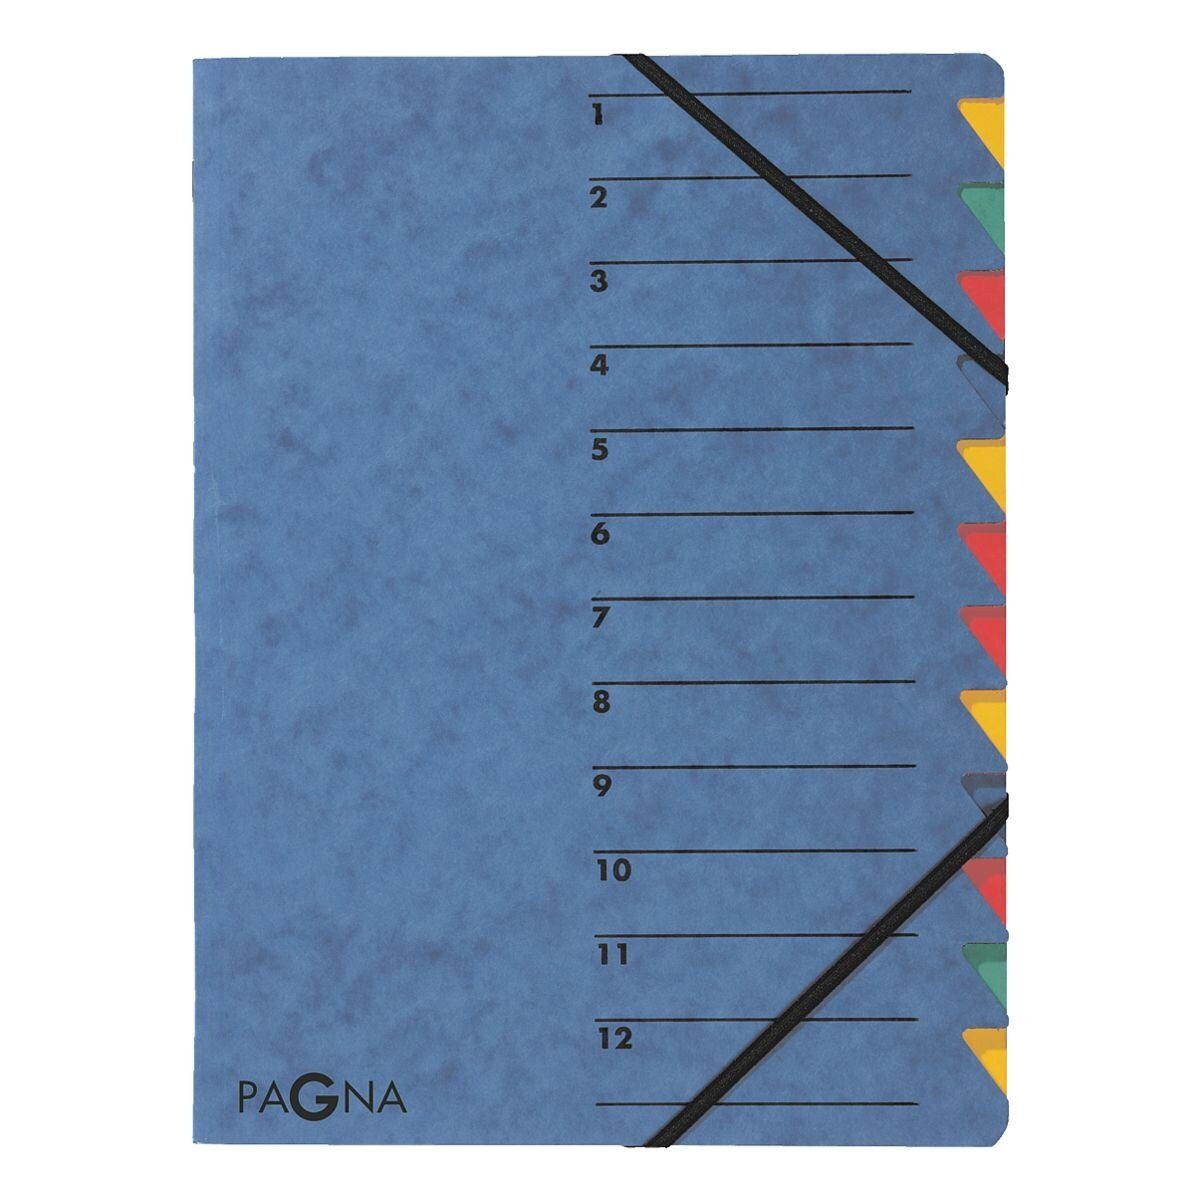 PAGNA Organisationsmappe Standard, Ordnungsmappe mit 12 Fächern, A4 blau